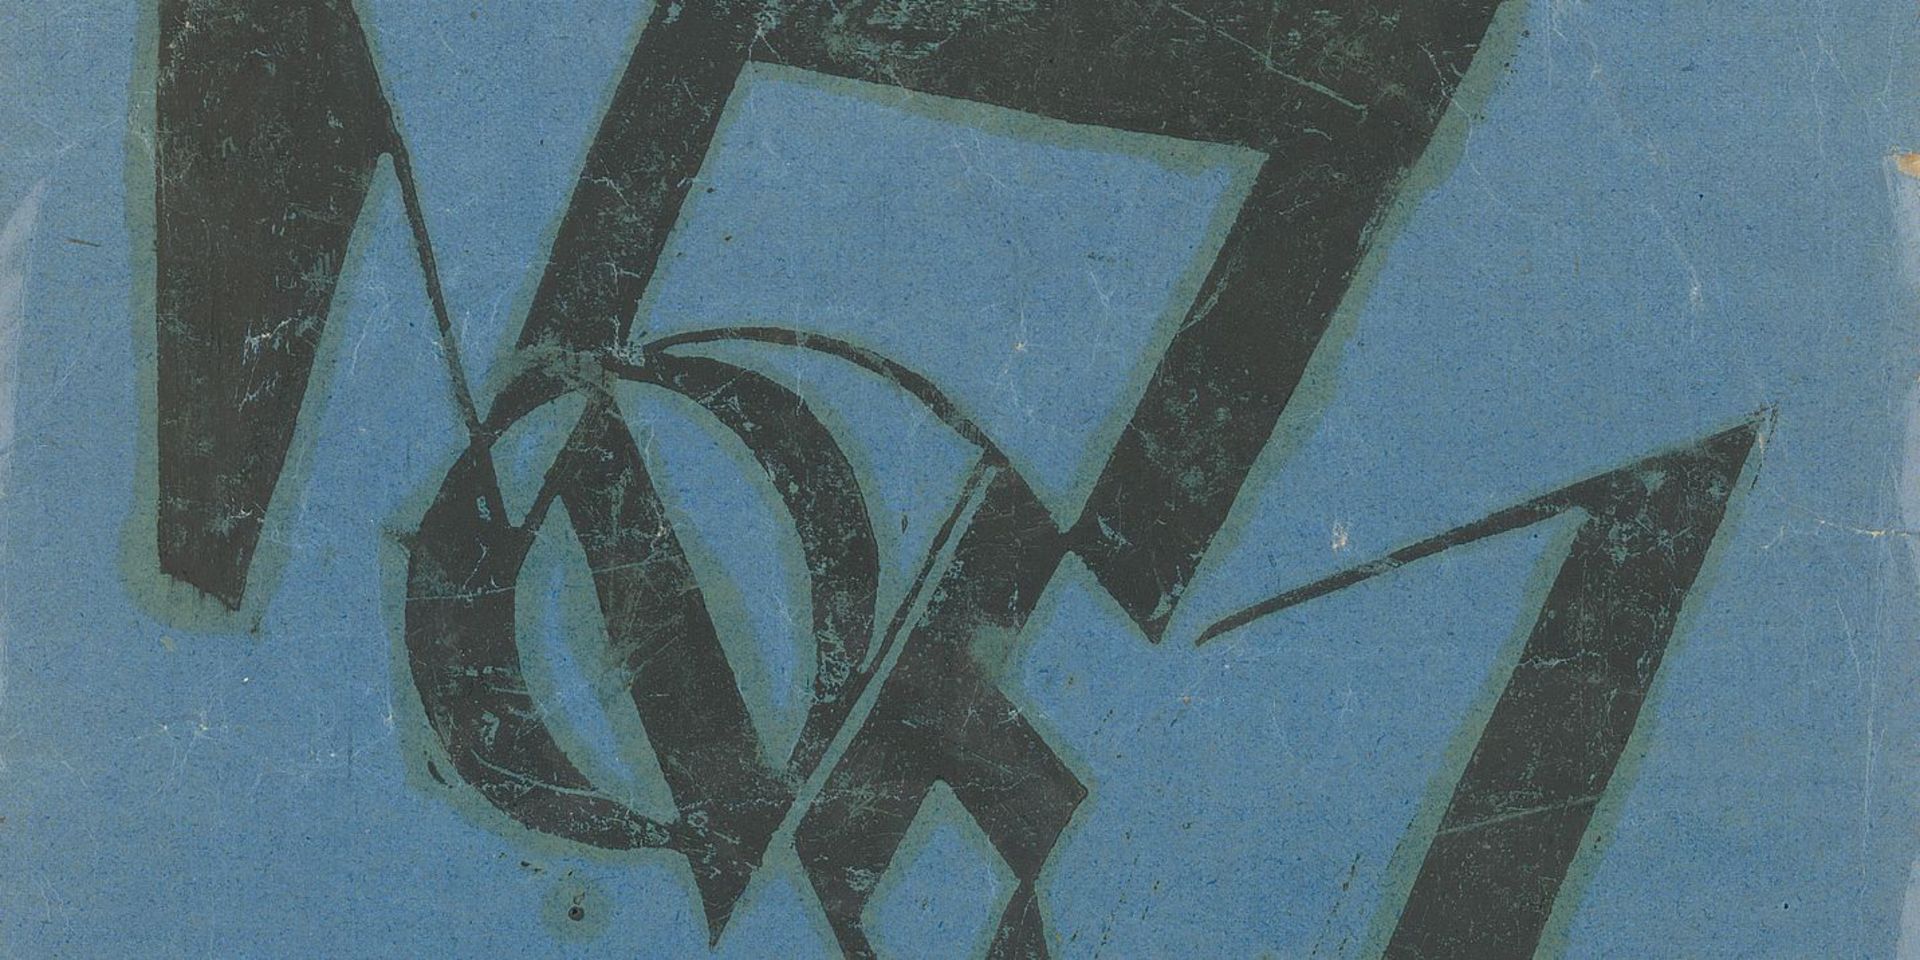 Typografischer Entwurf von Moritz Melzer, Druckgrafik und Druckfarbe auf blauem Hochglanzpapier, 35,5 x 21,5 cm